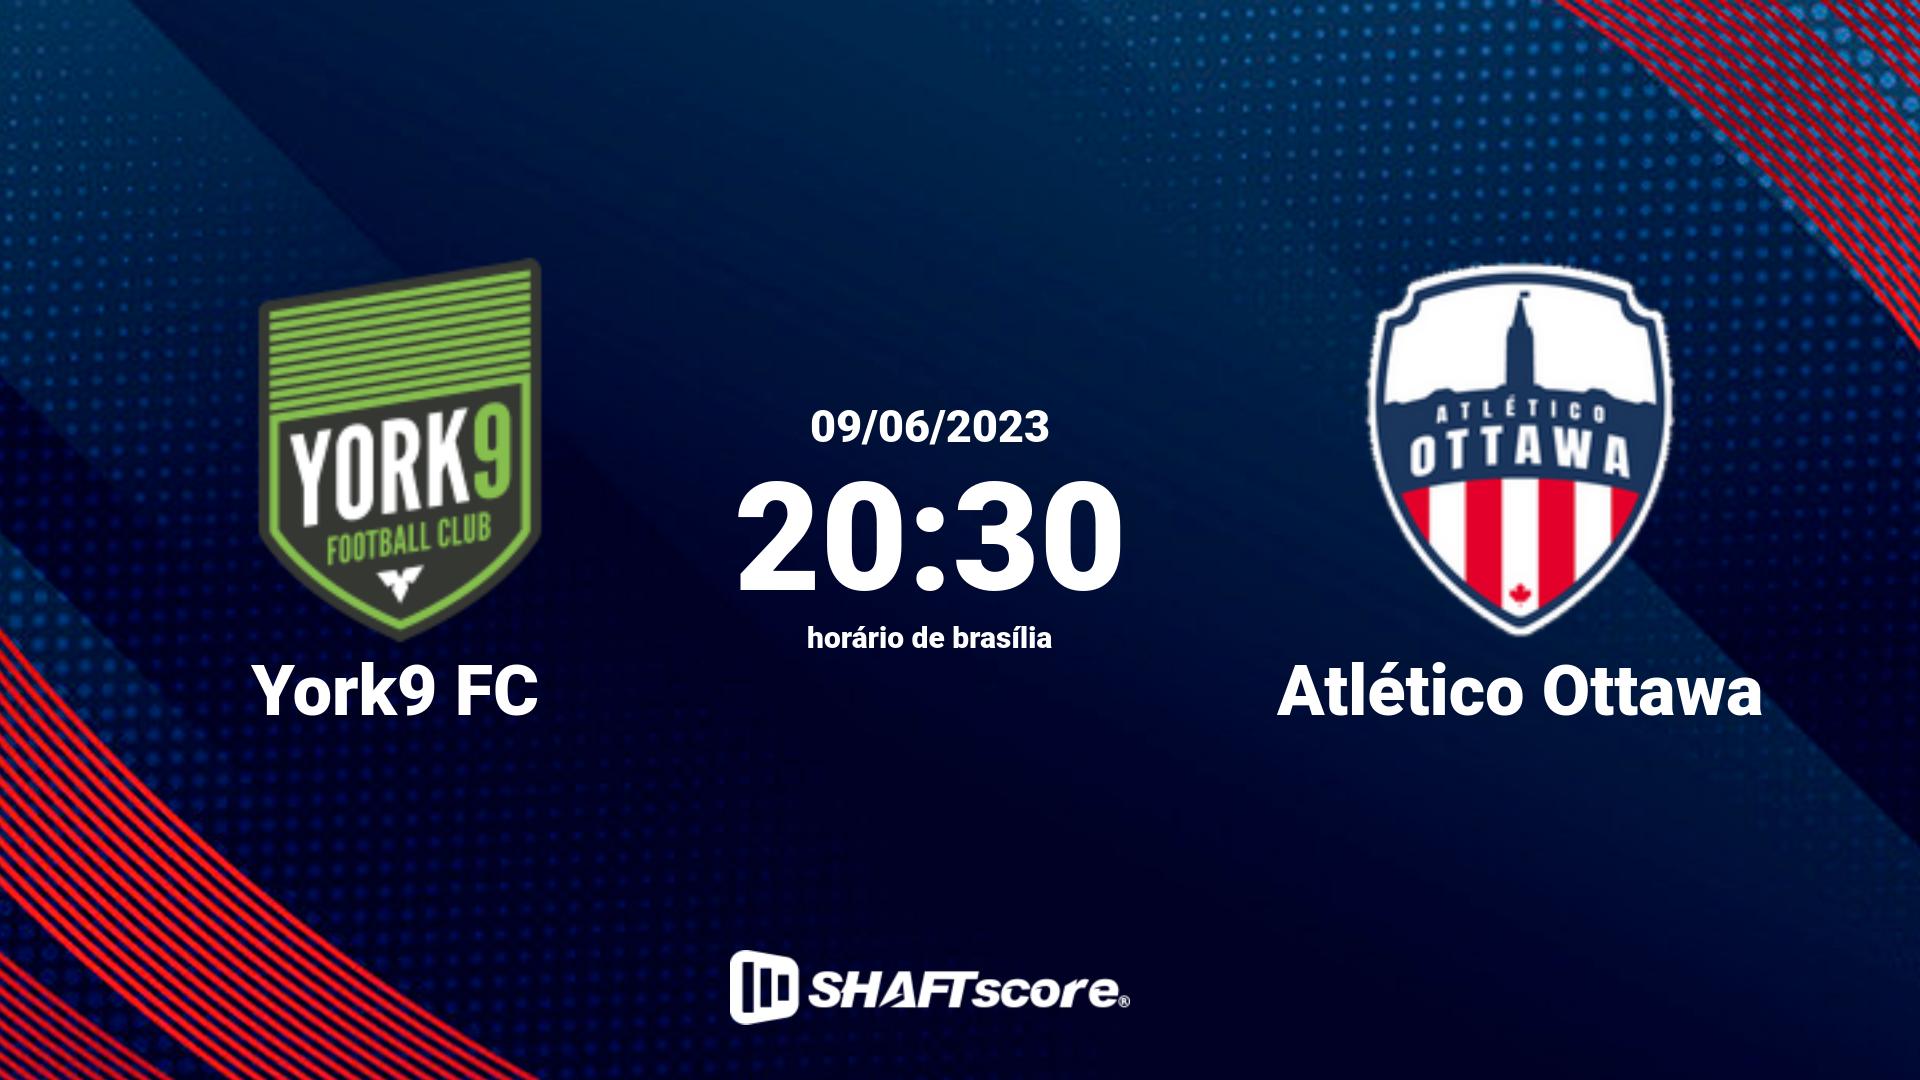 Estatísticas do jogo York9 FC vs Atlético Ottawa 09.06 20:30